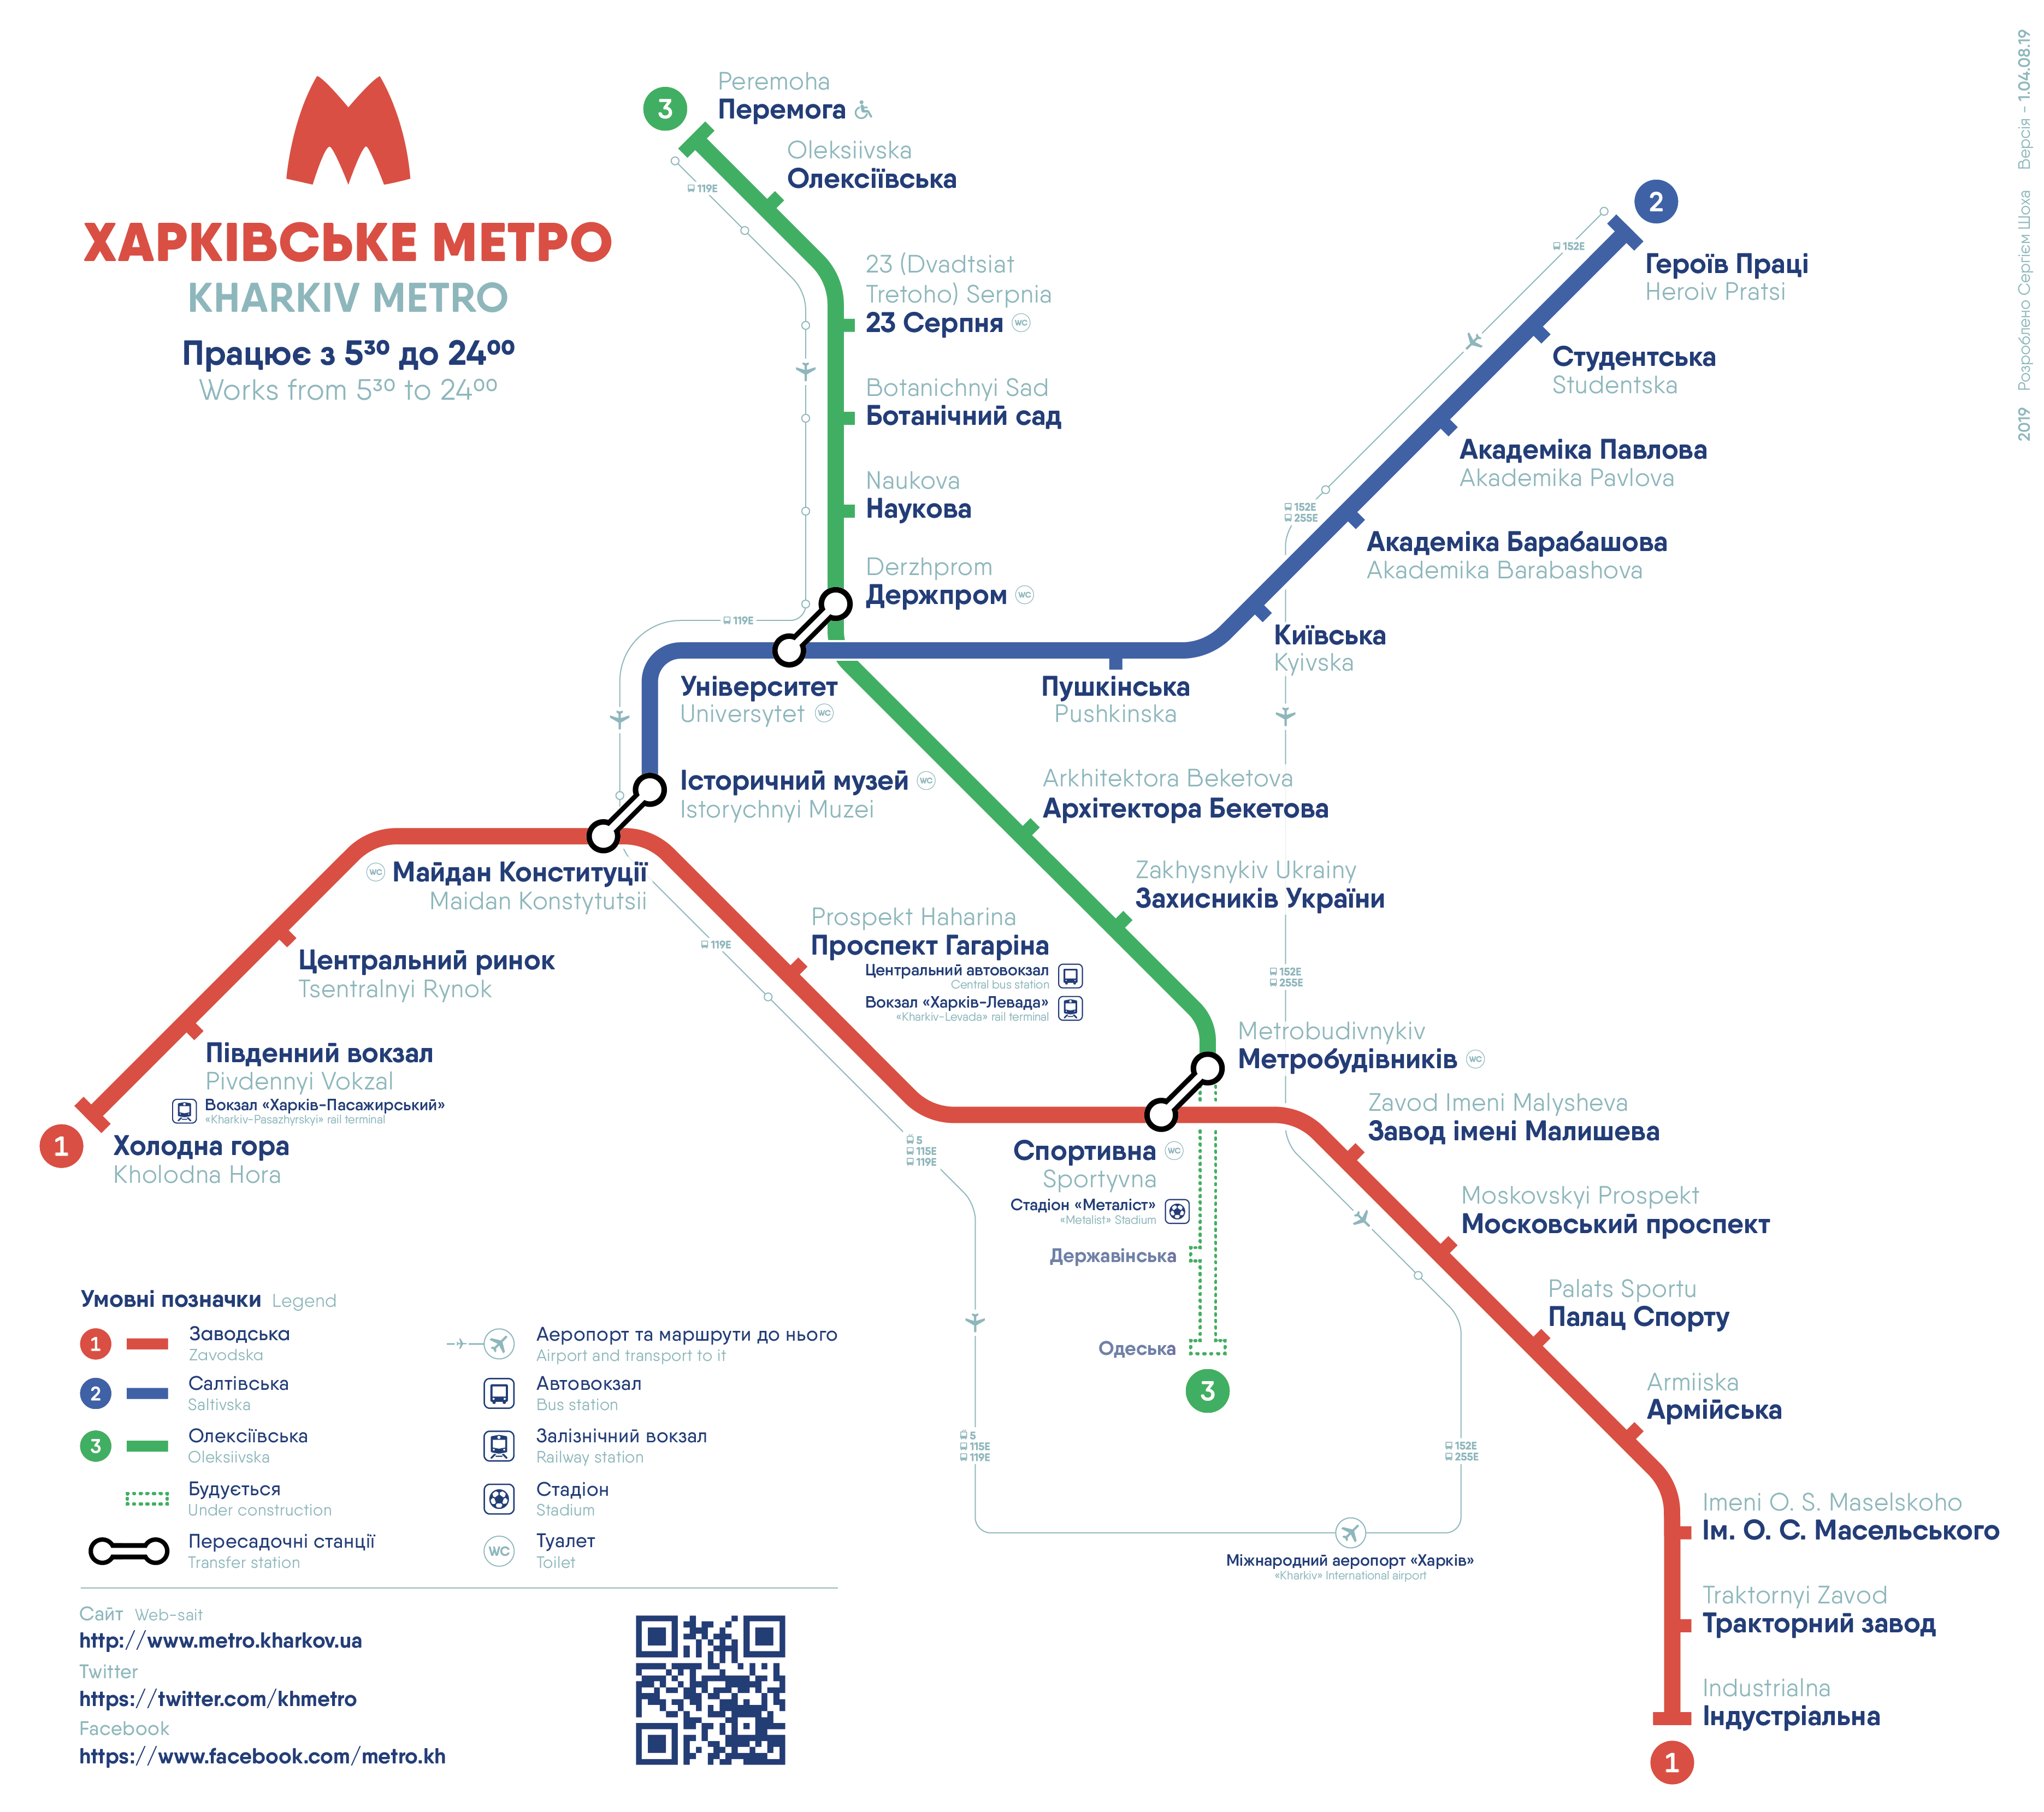 Карта метро Харьков 2019